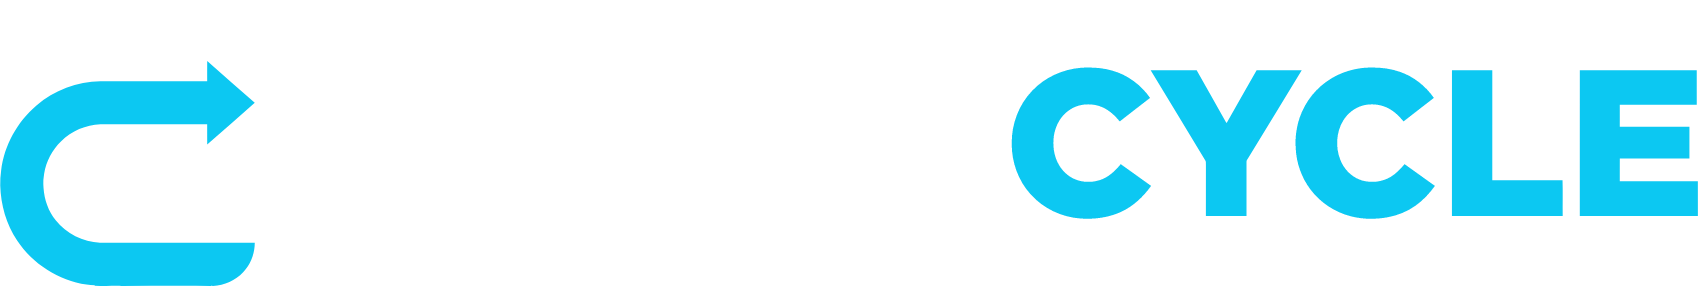 PureCycle Technologies logo grand pour les fonds sombres (PNG transparent)